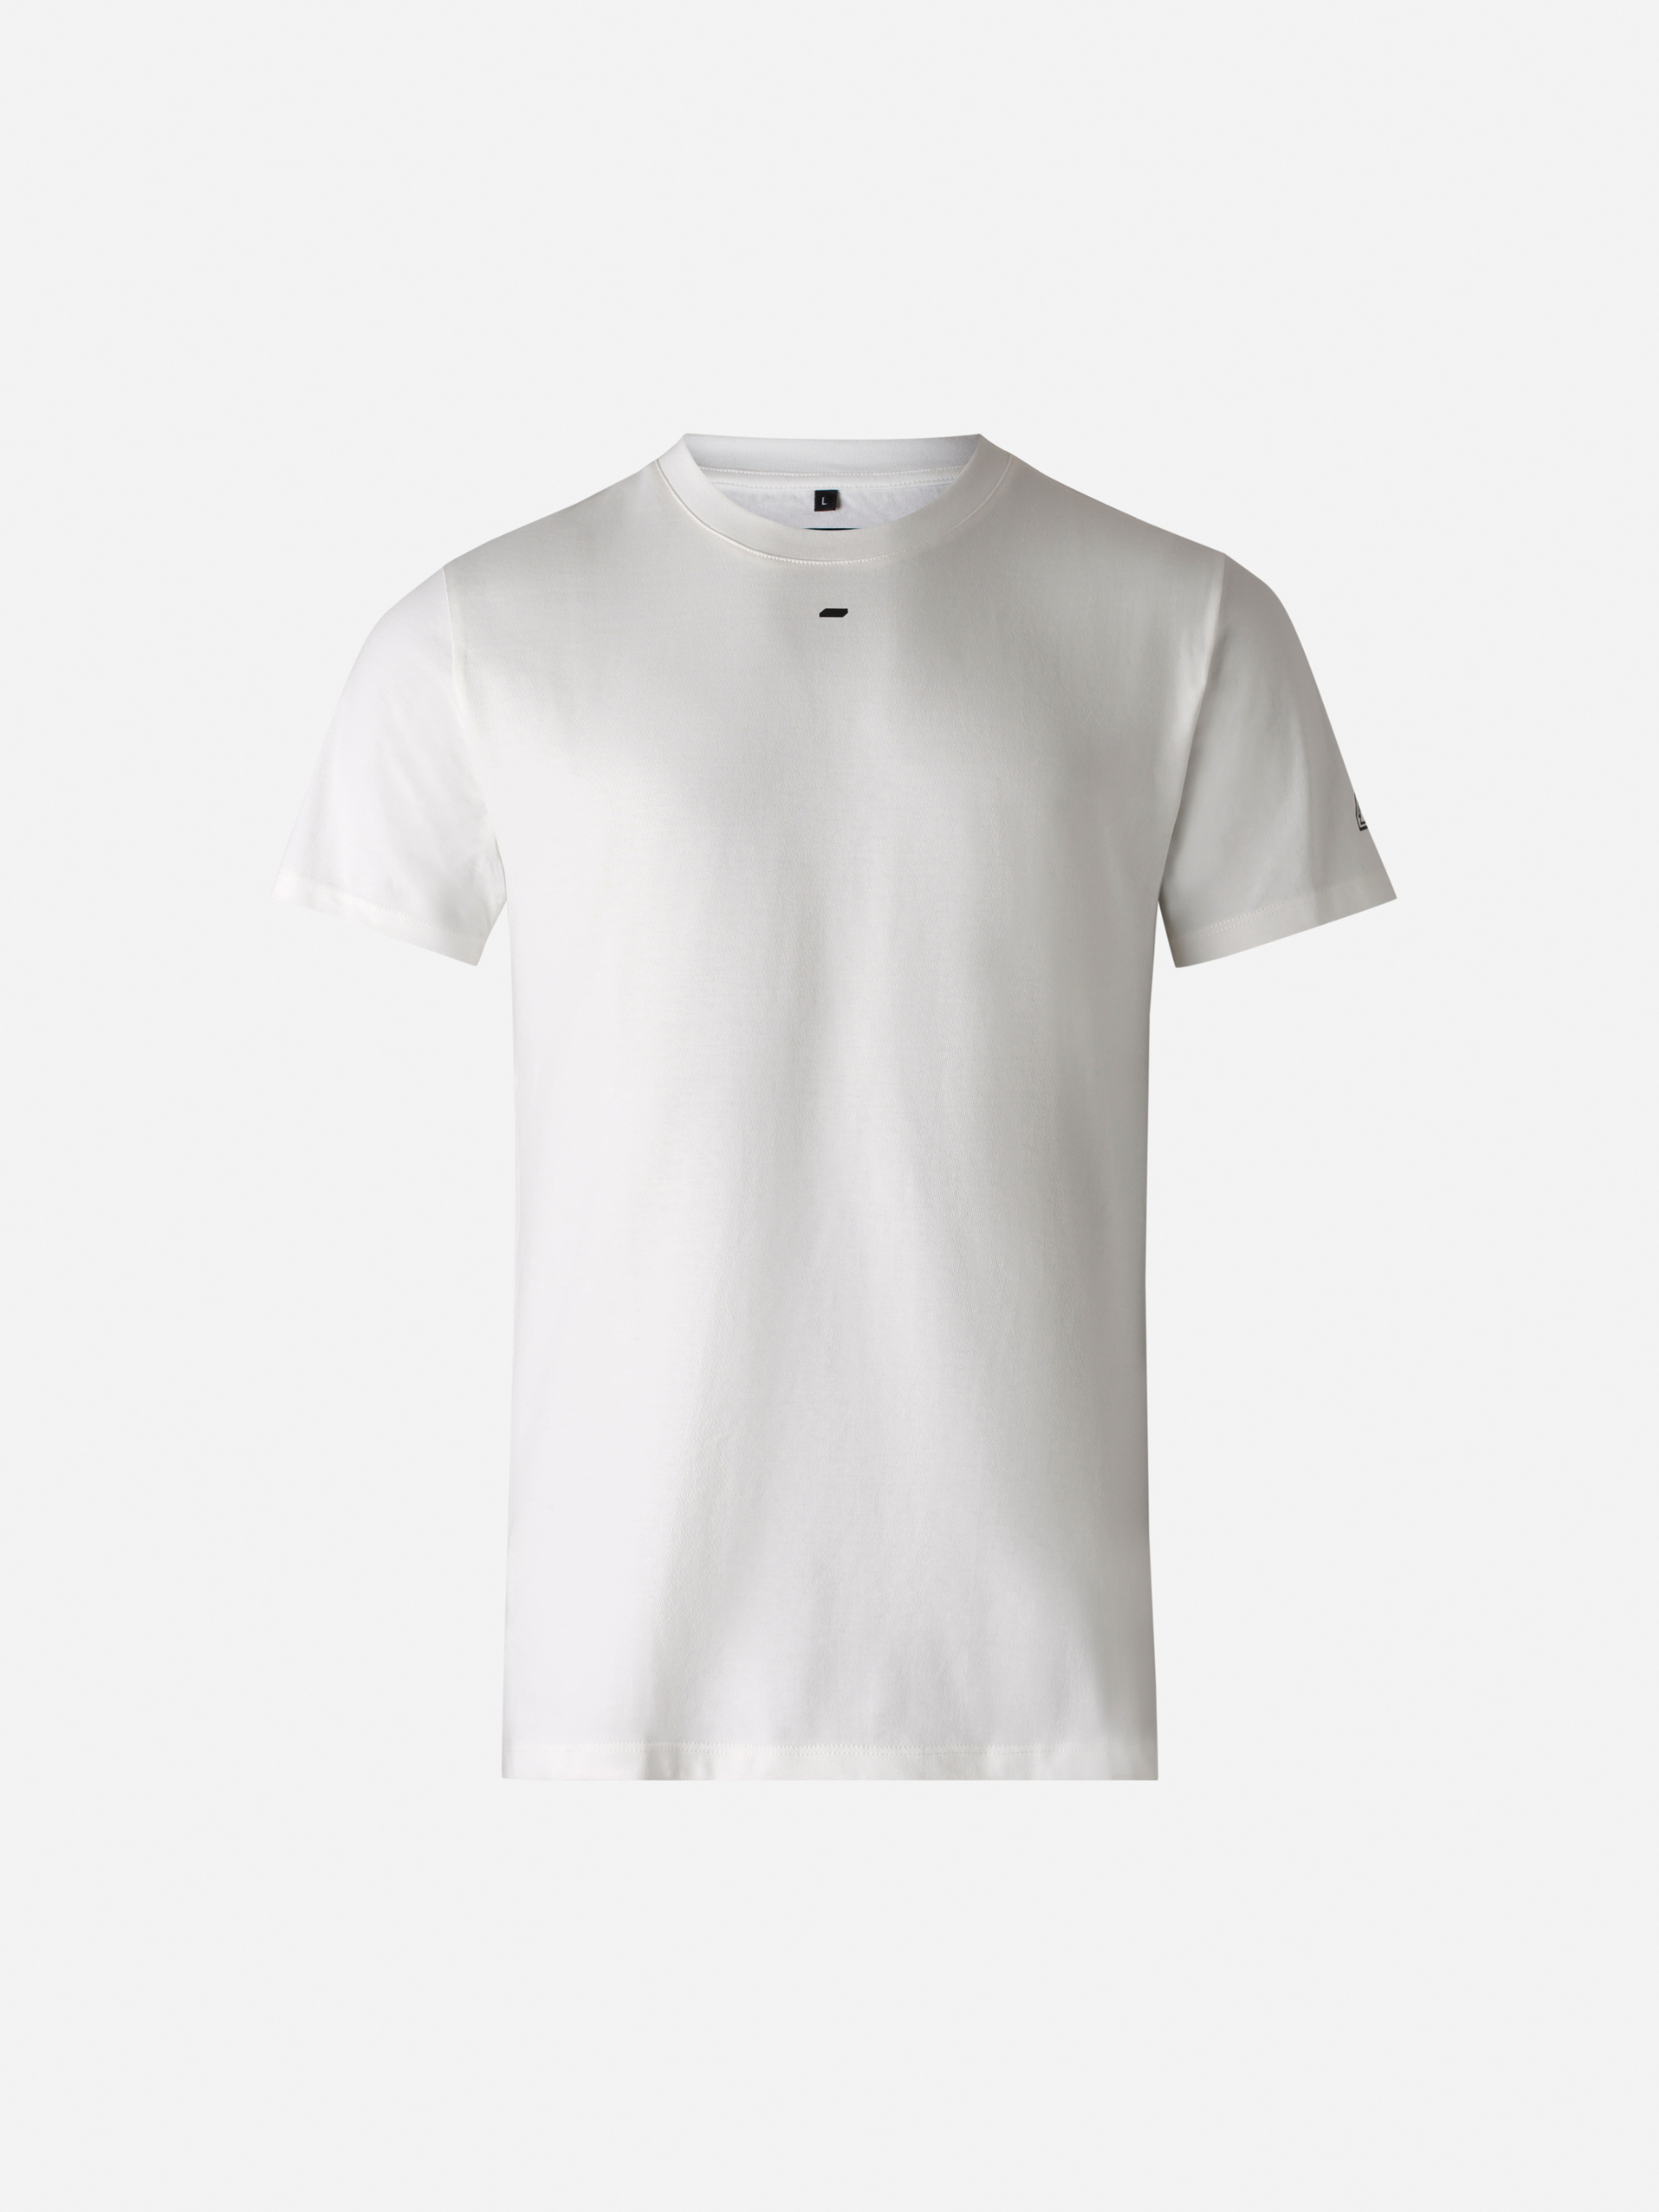 Olwen Optic White unisex t-shirt